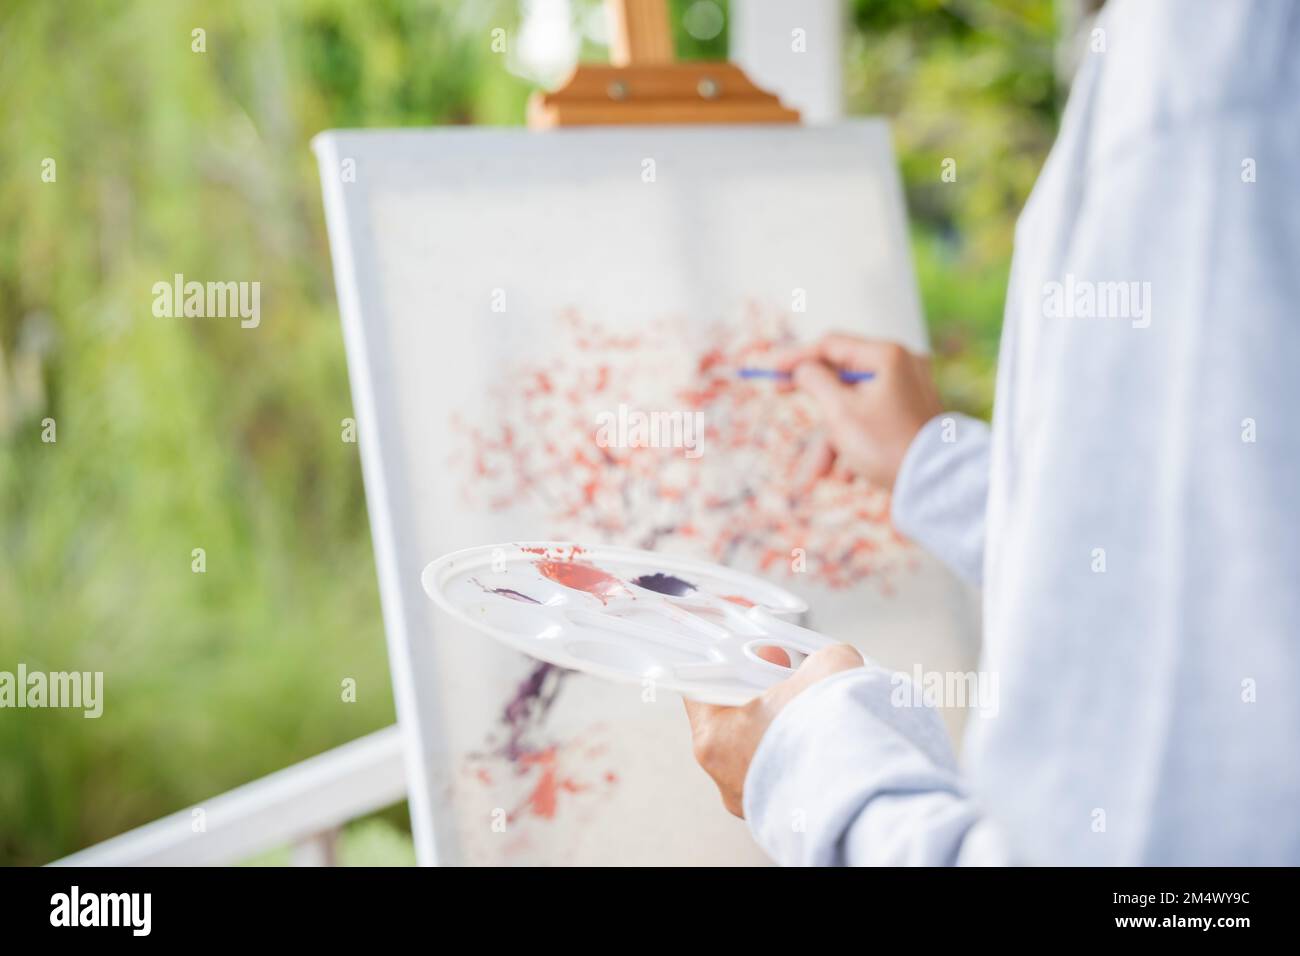 Ein alter Mann malte Bilder mit Pinsel- und Wasserfarben auf Leinwand Stockfoto